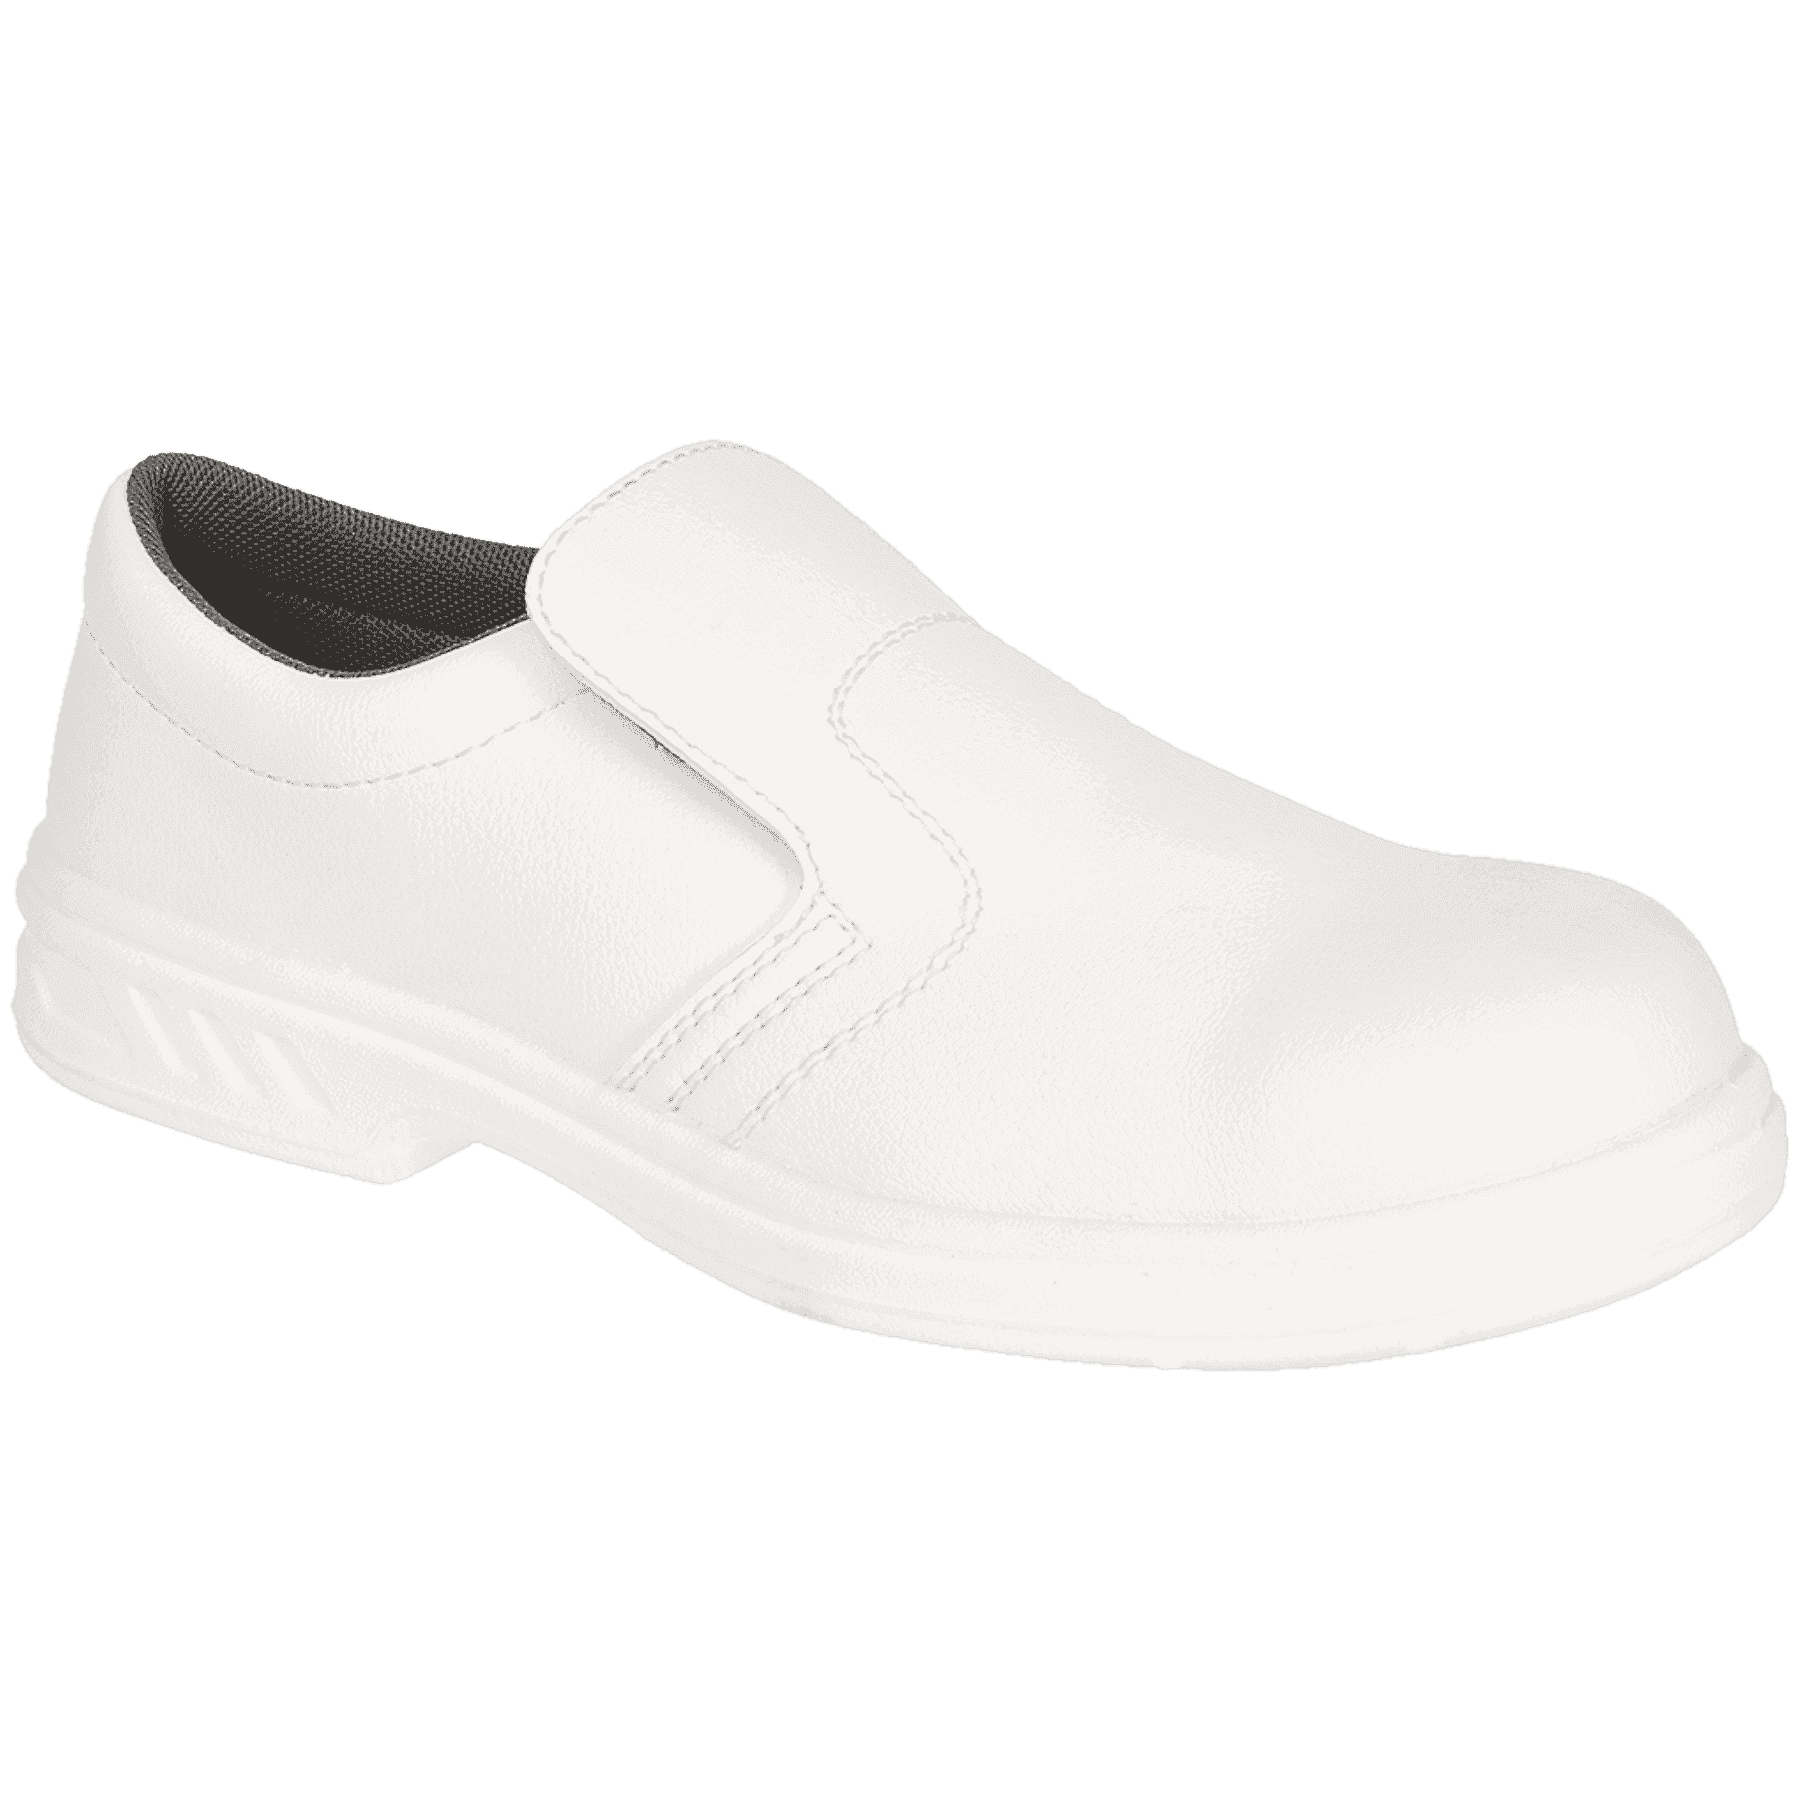 Steelite S2 Slip On Safety Shoes FW81 White